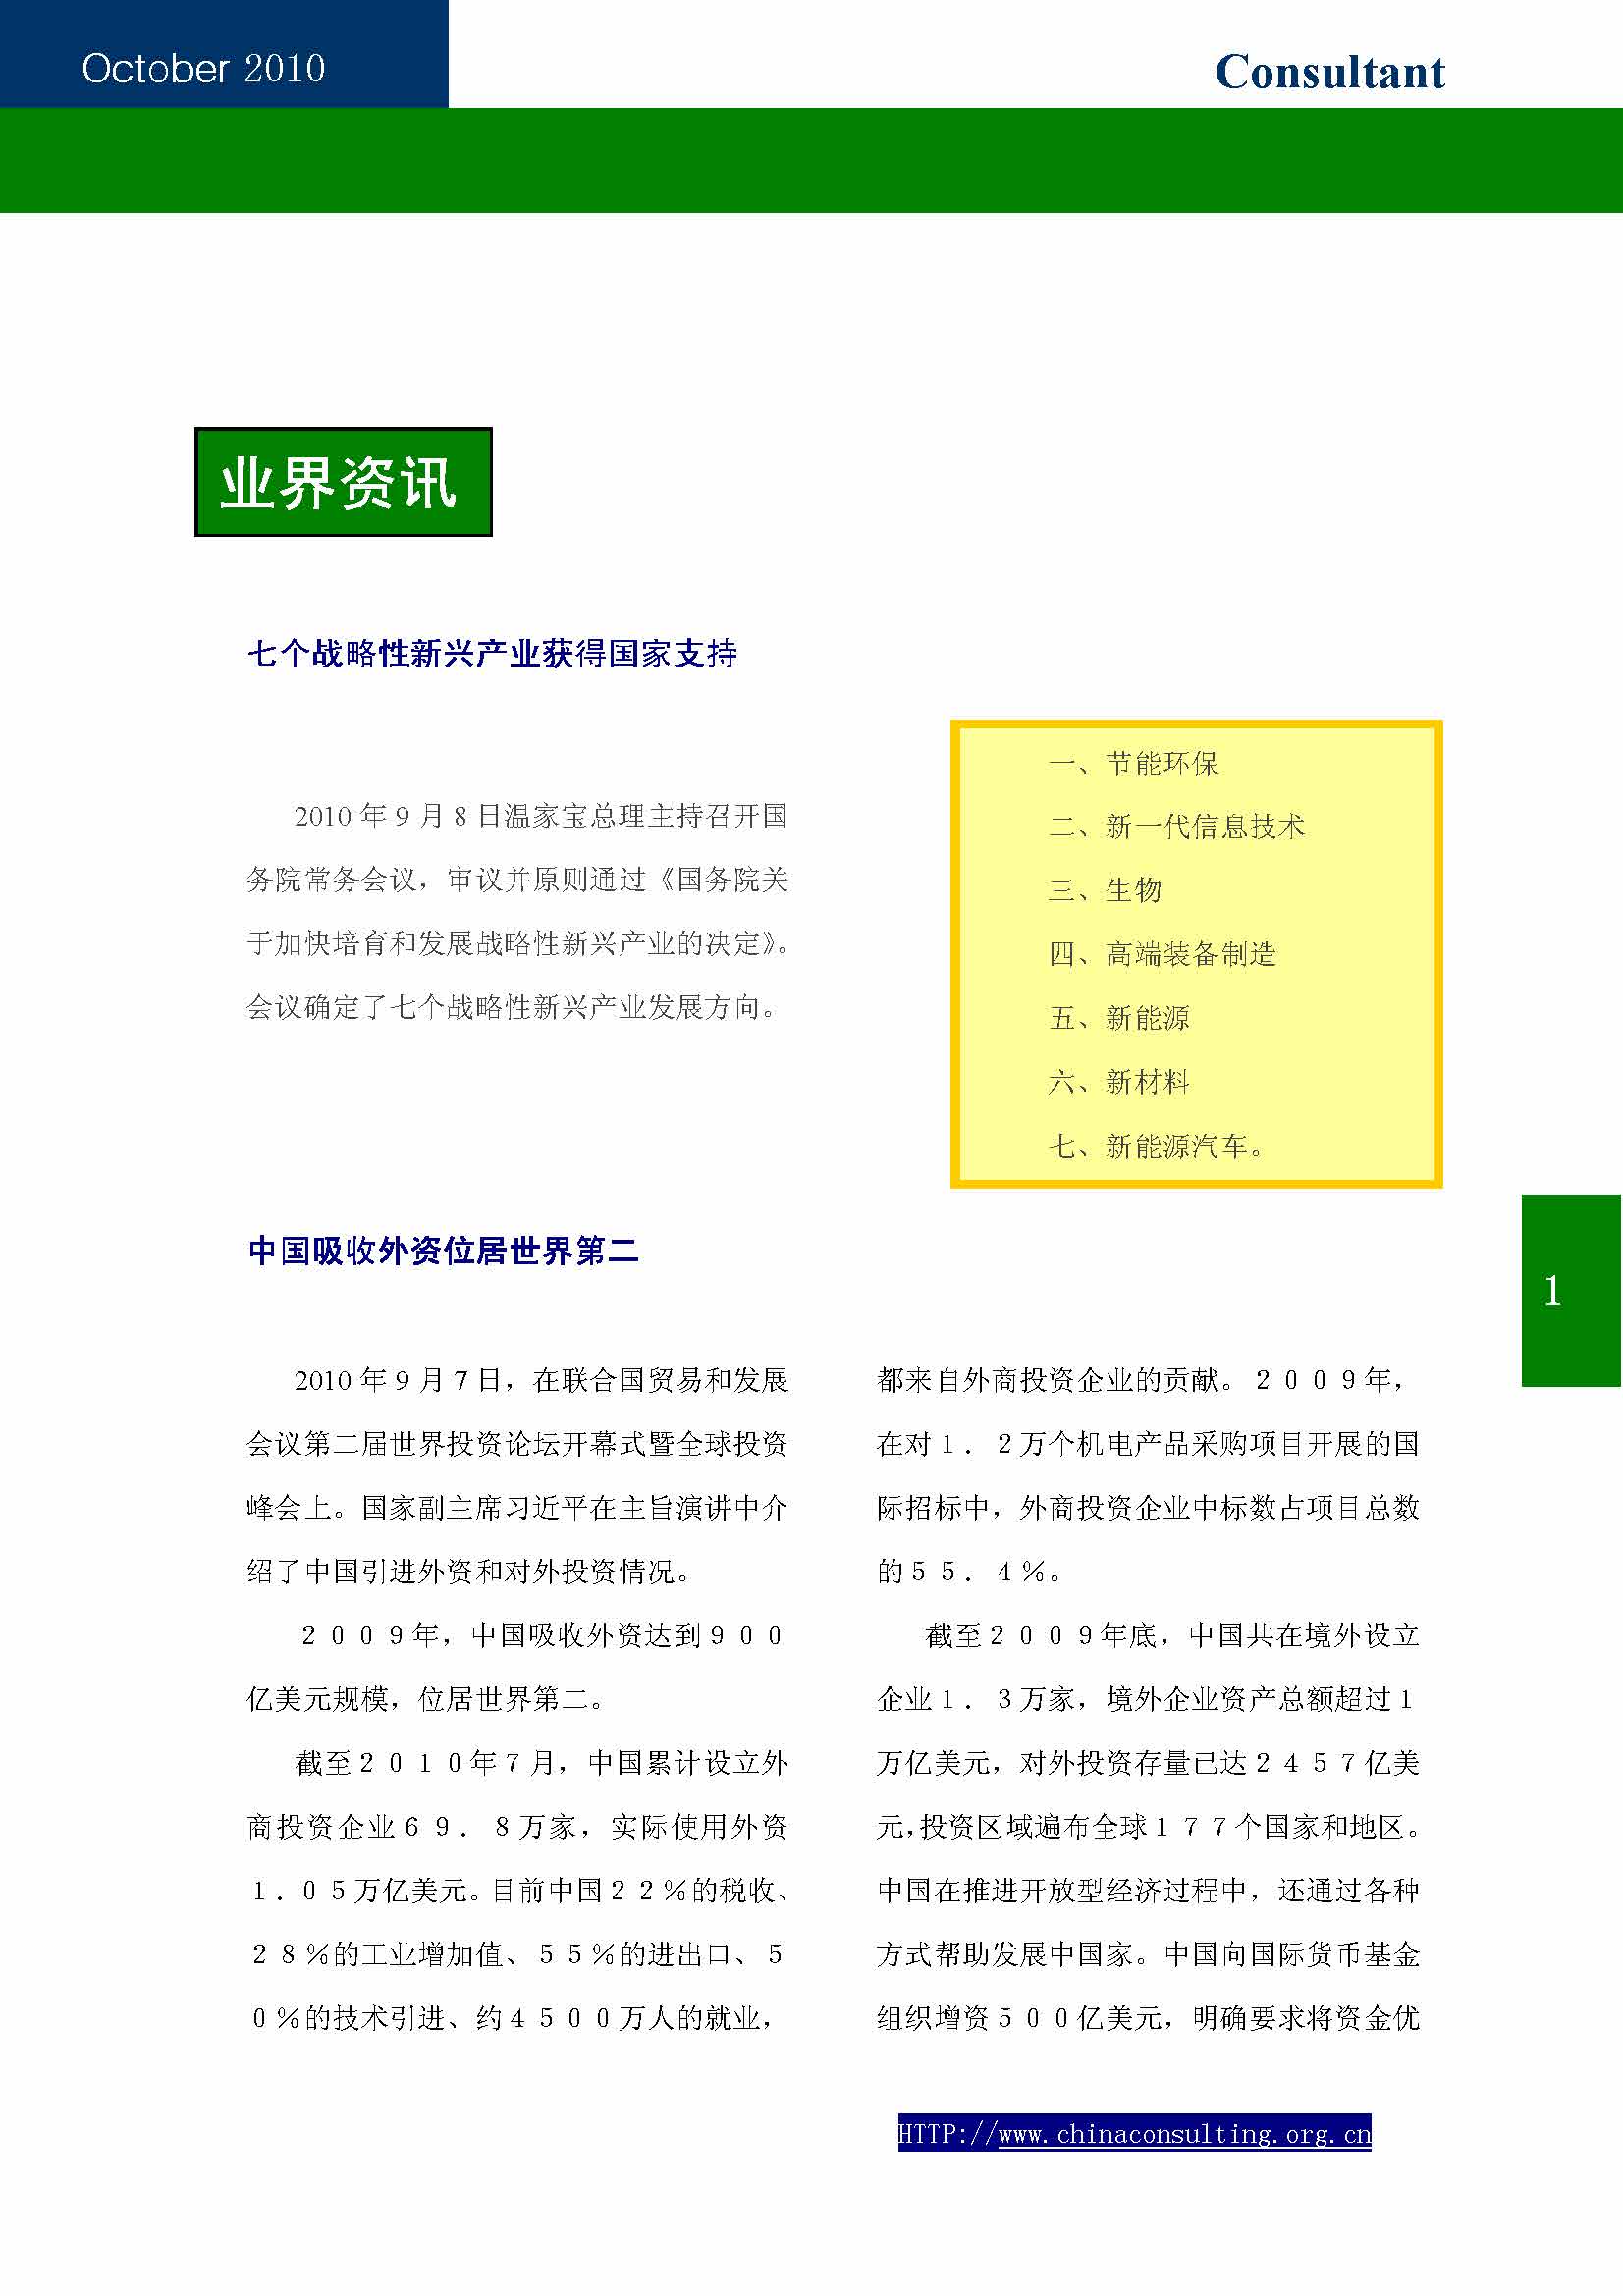 12中国科技咨询协会第十二期会刊_页面_03.jpg